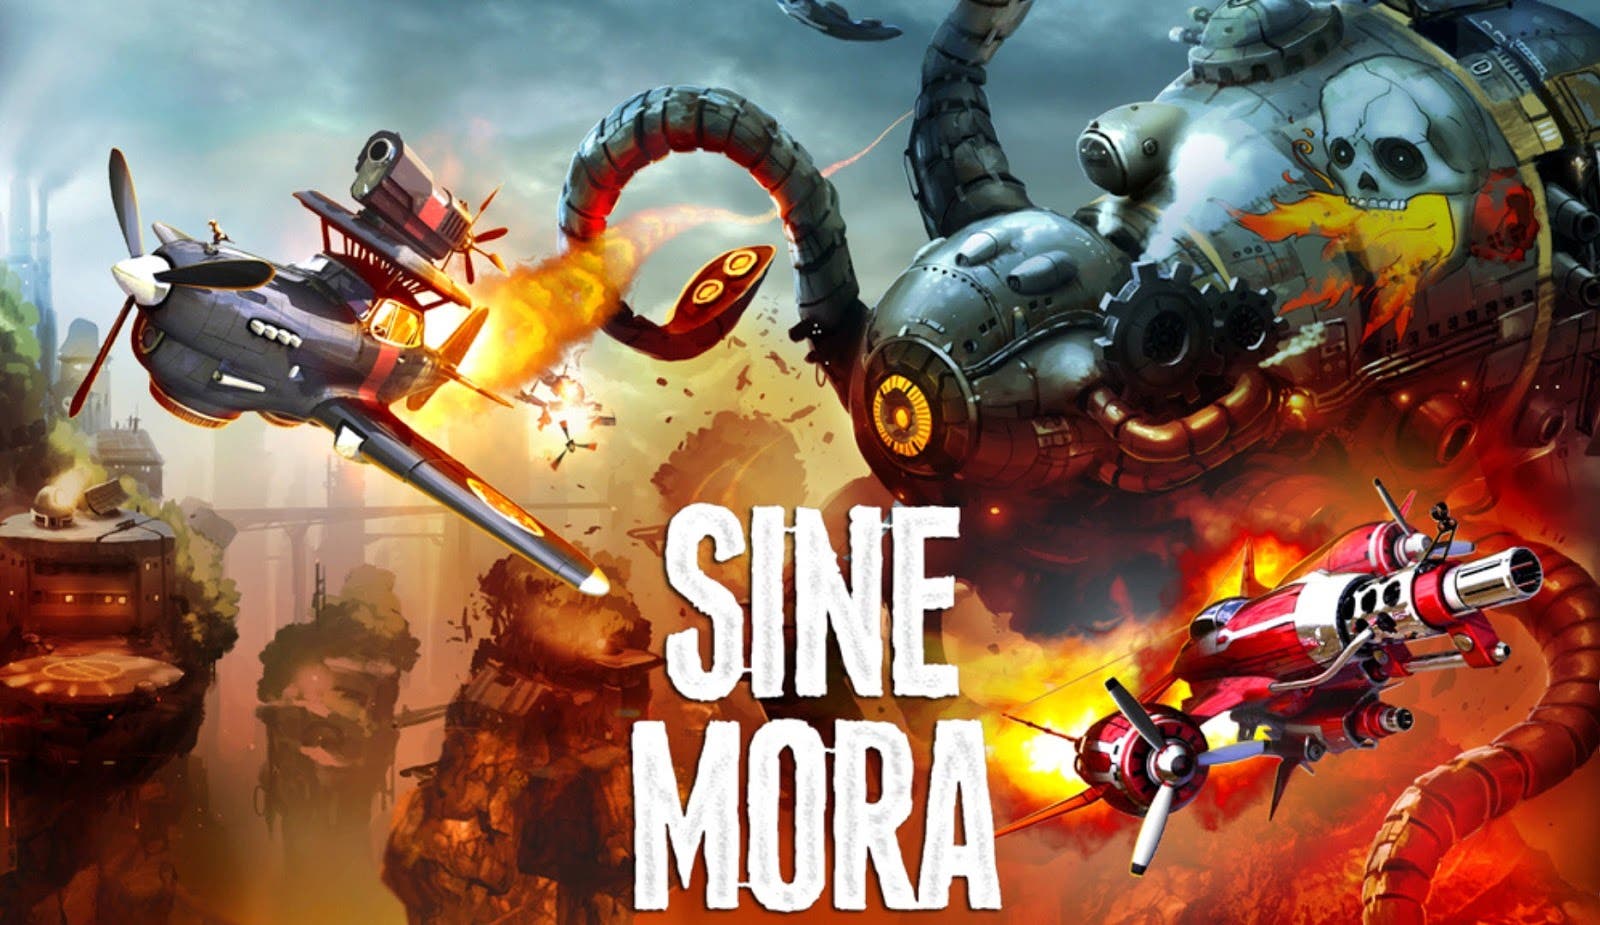 La versión de Switch de Sine Mora EX llegará este verano